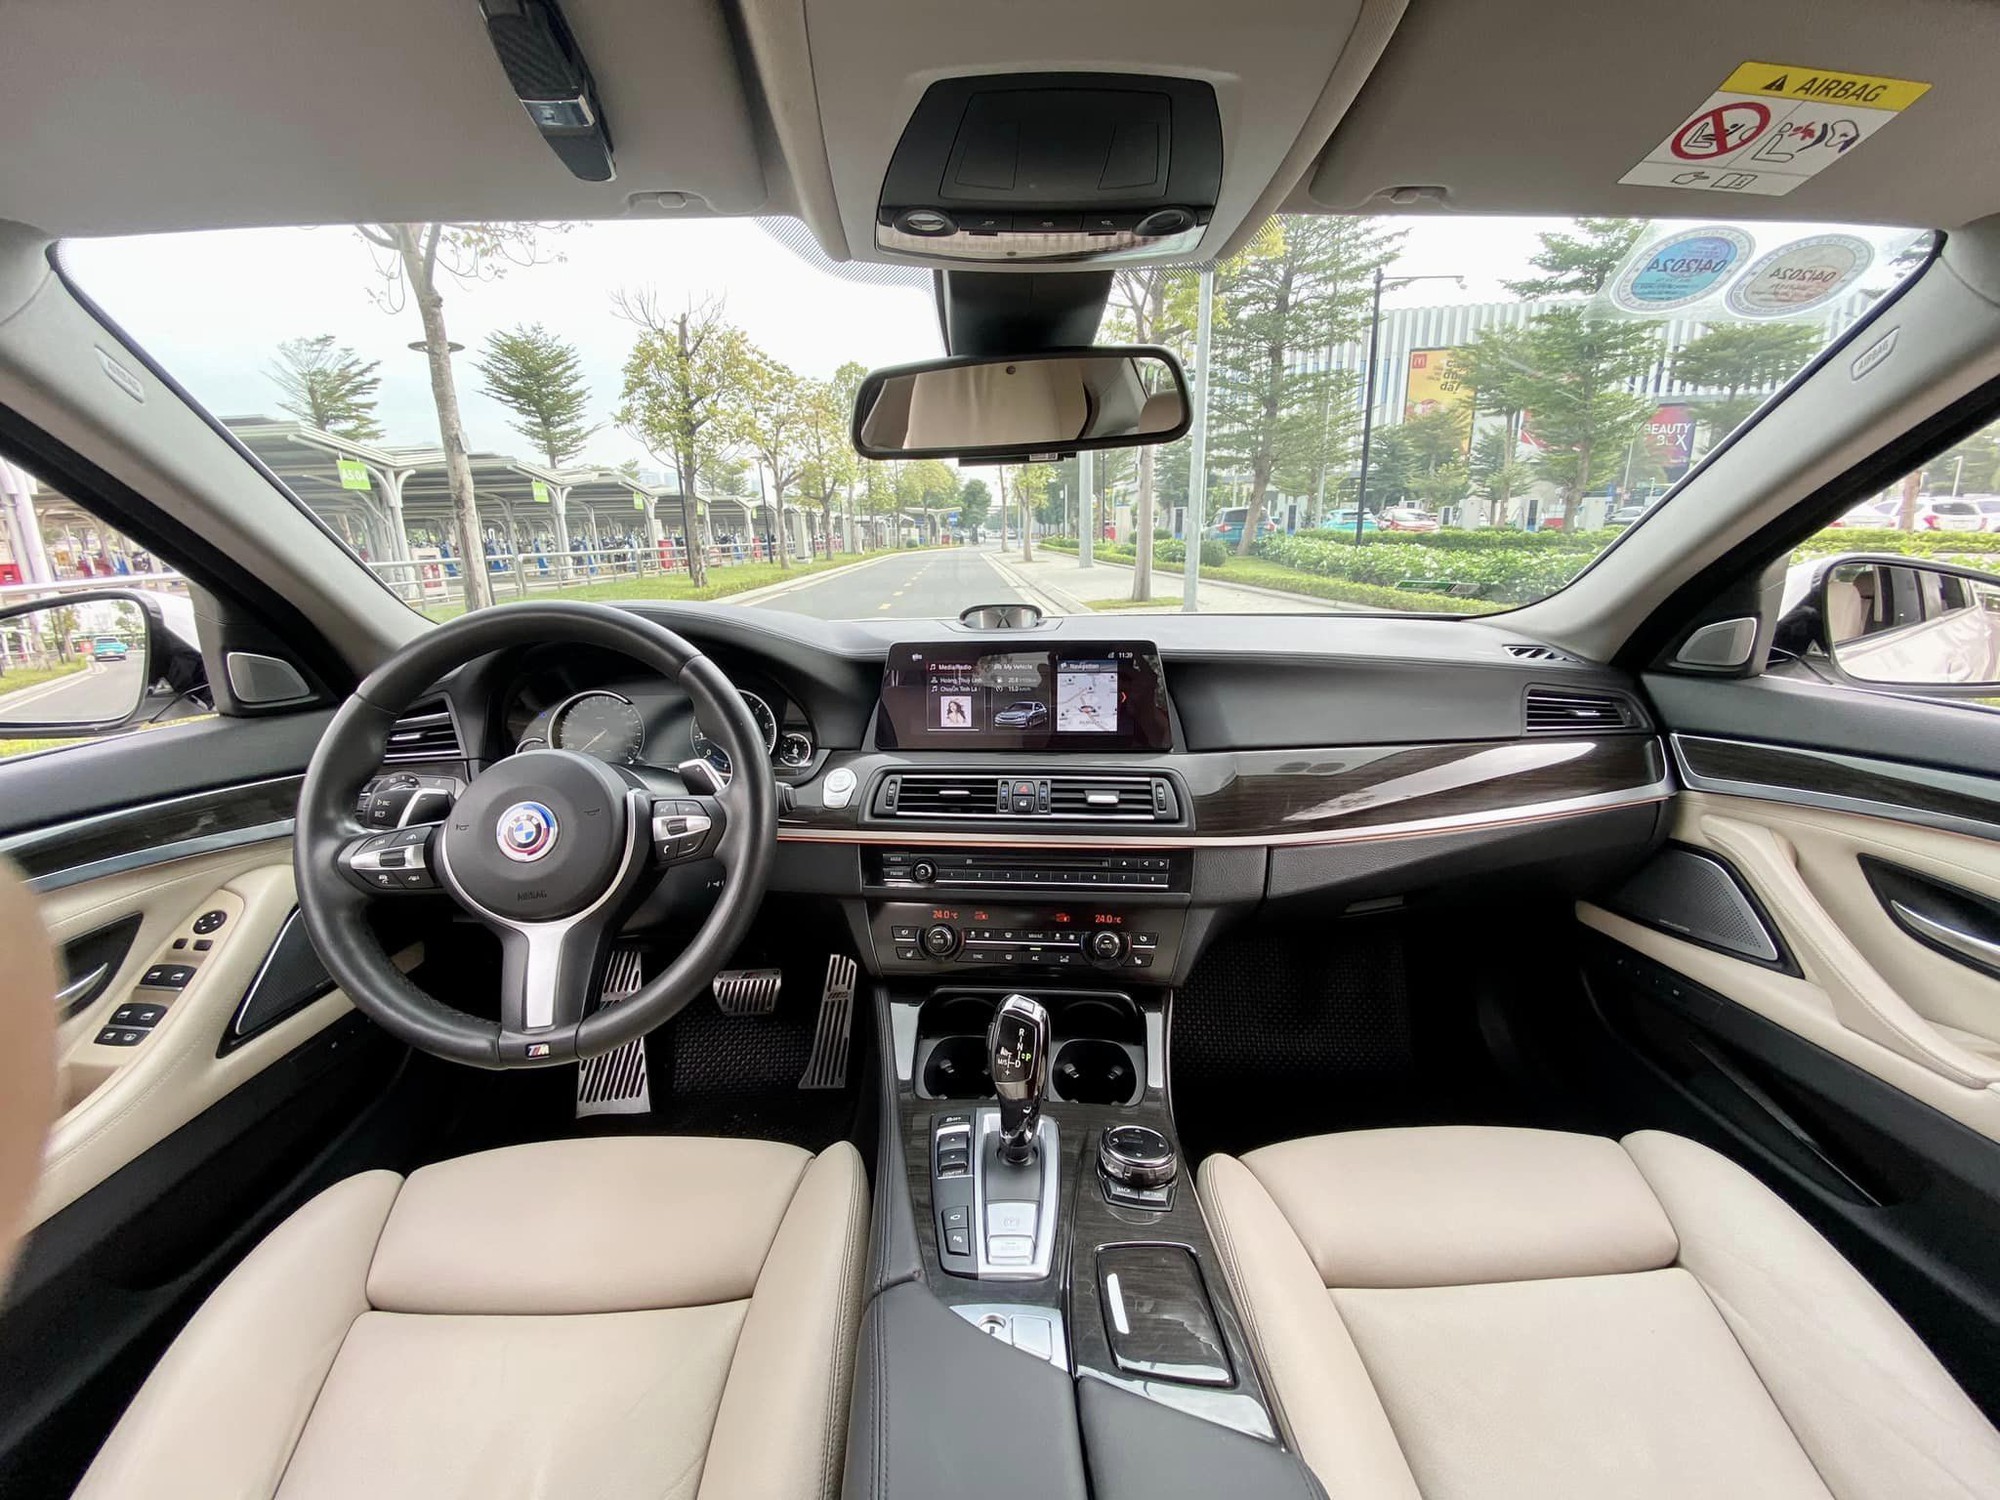 BMW 520i chạy 70.000 km rao bán chưa tới 1 tỷ: Riêng tiền độ đã 1,1 tỷ, nhìn bên ngoài khó biết đây là xe đời sâu- Ảnh 7.